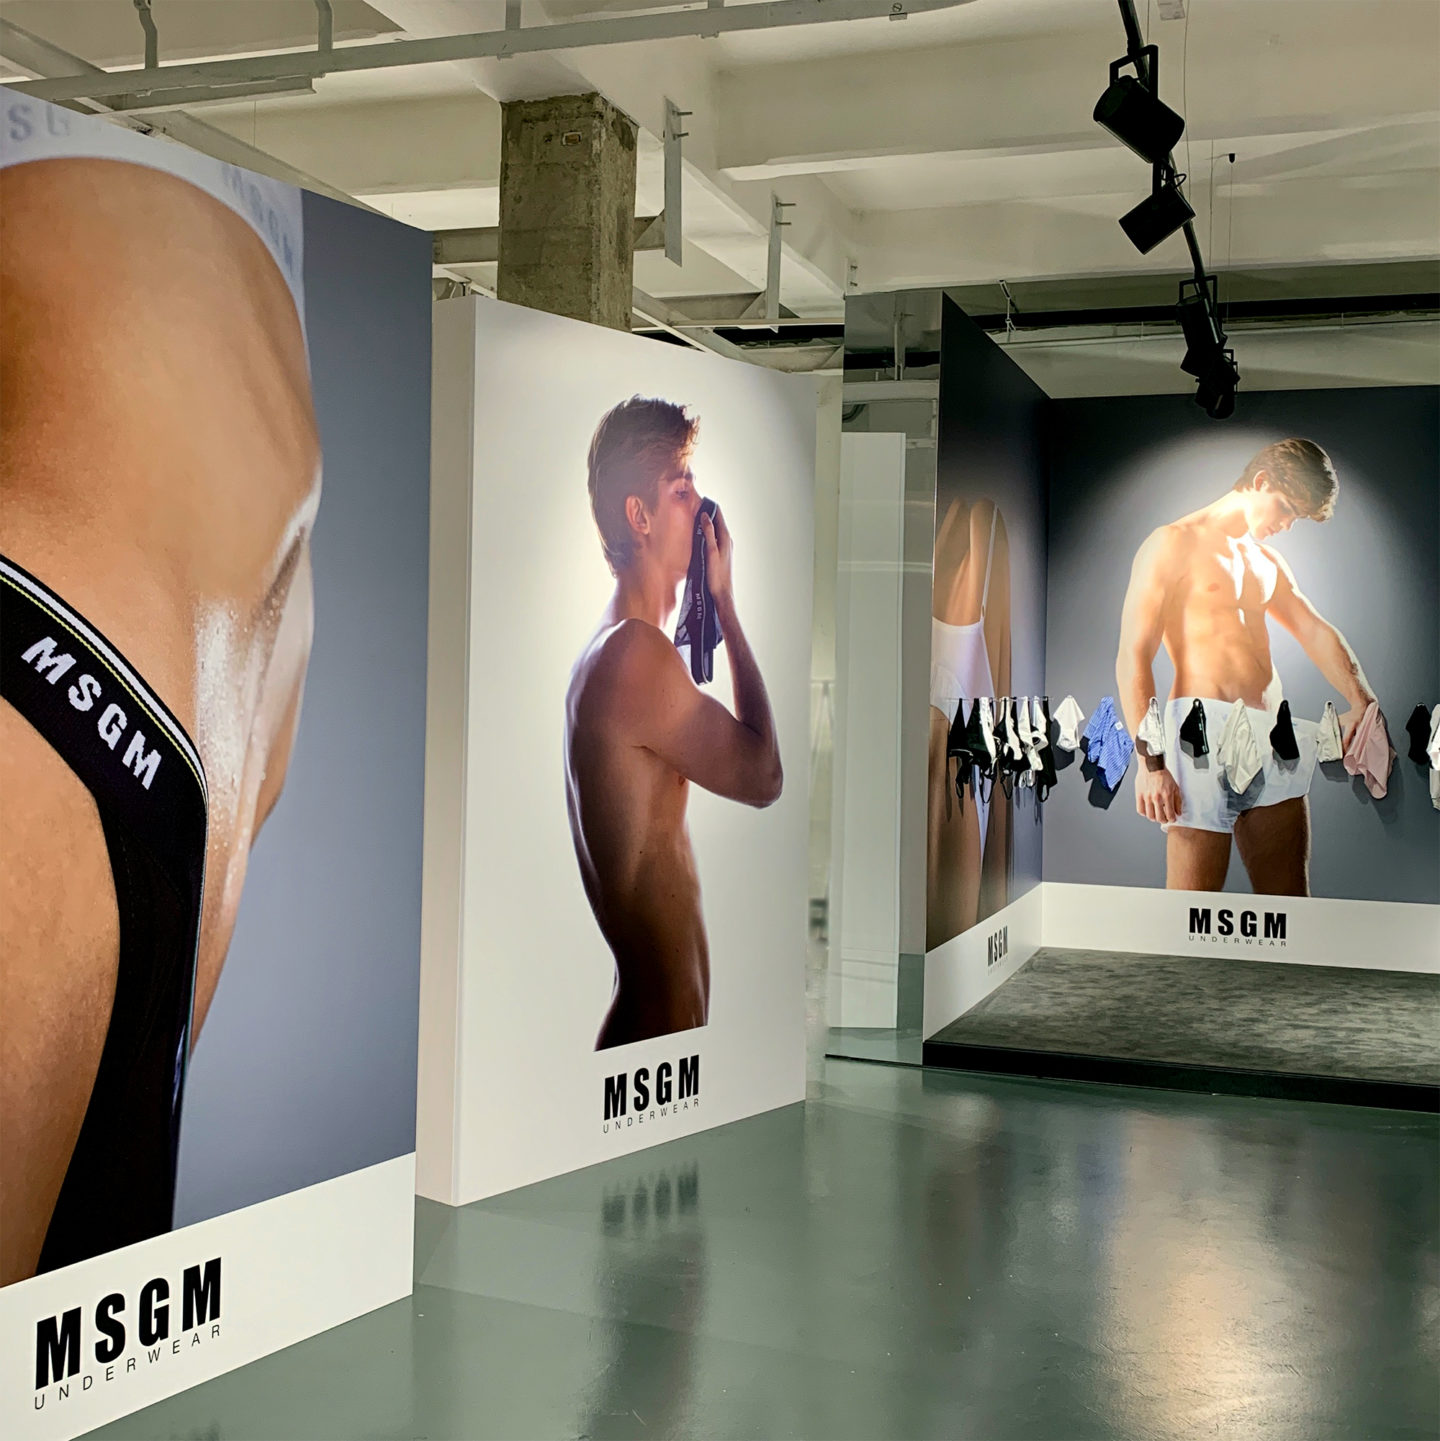 MSGM underwear presentation set design